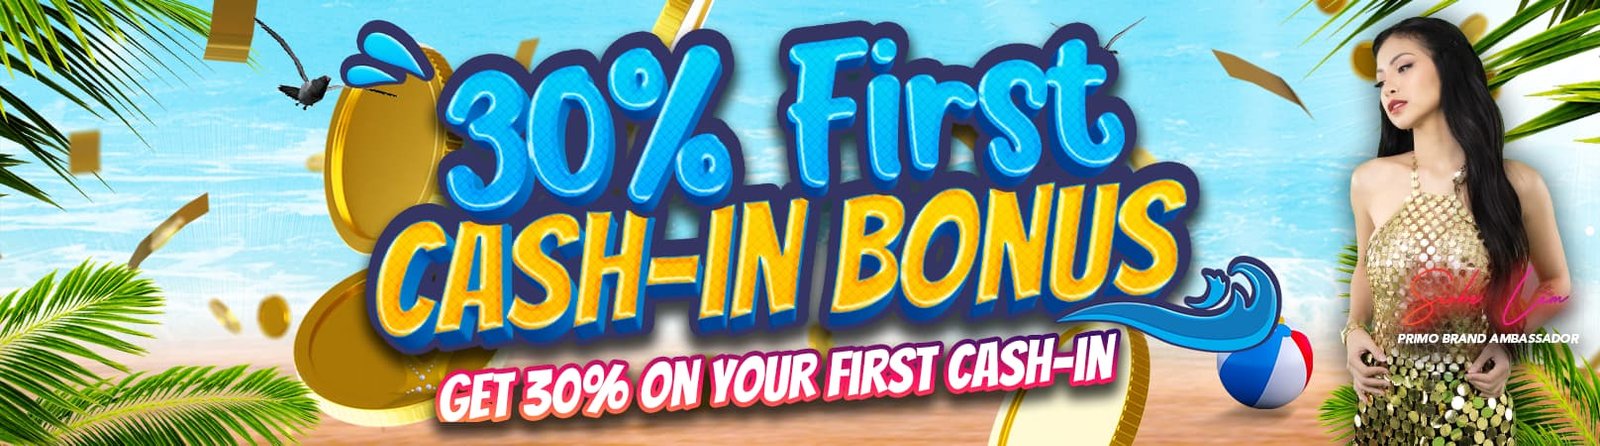 30% First Cash-in Bonus